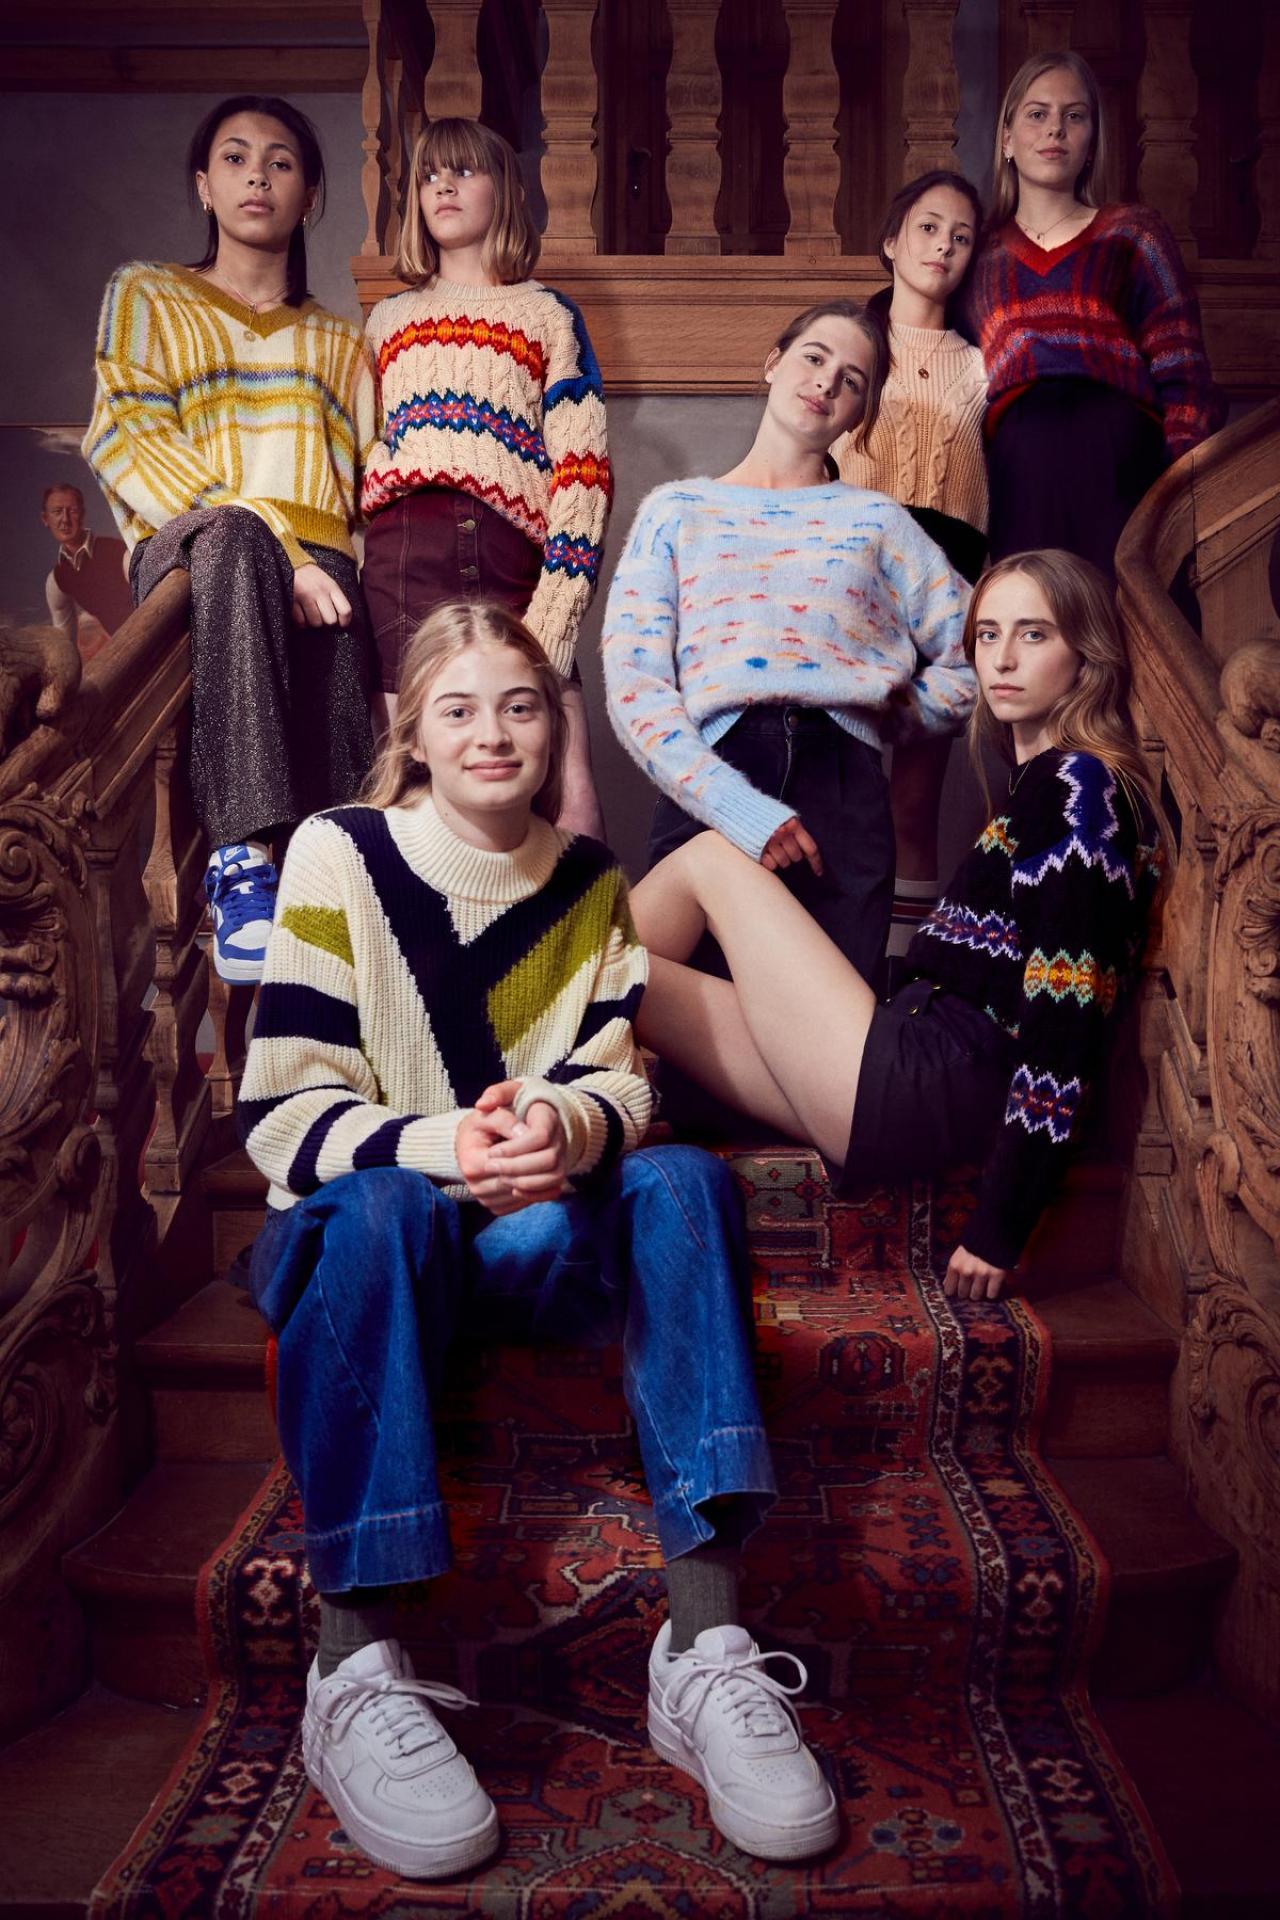 Leuke truien en basic broeken in een vrolijke kleurenmix, van het Belgische tienermerk Indee.